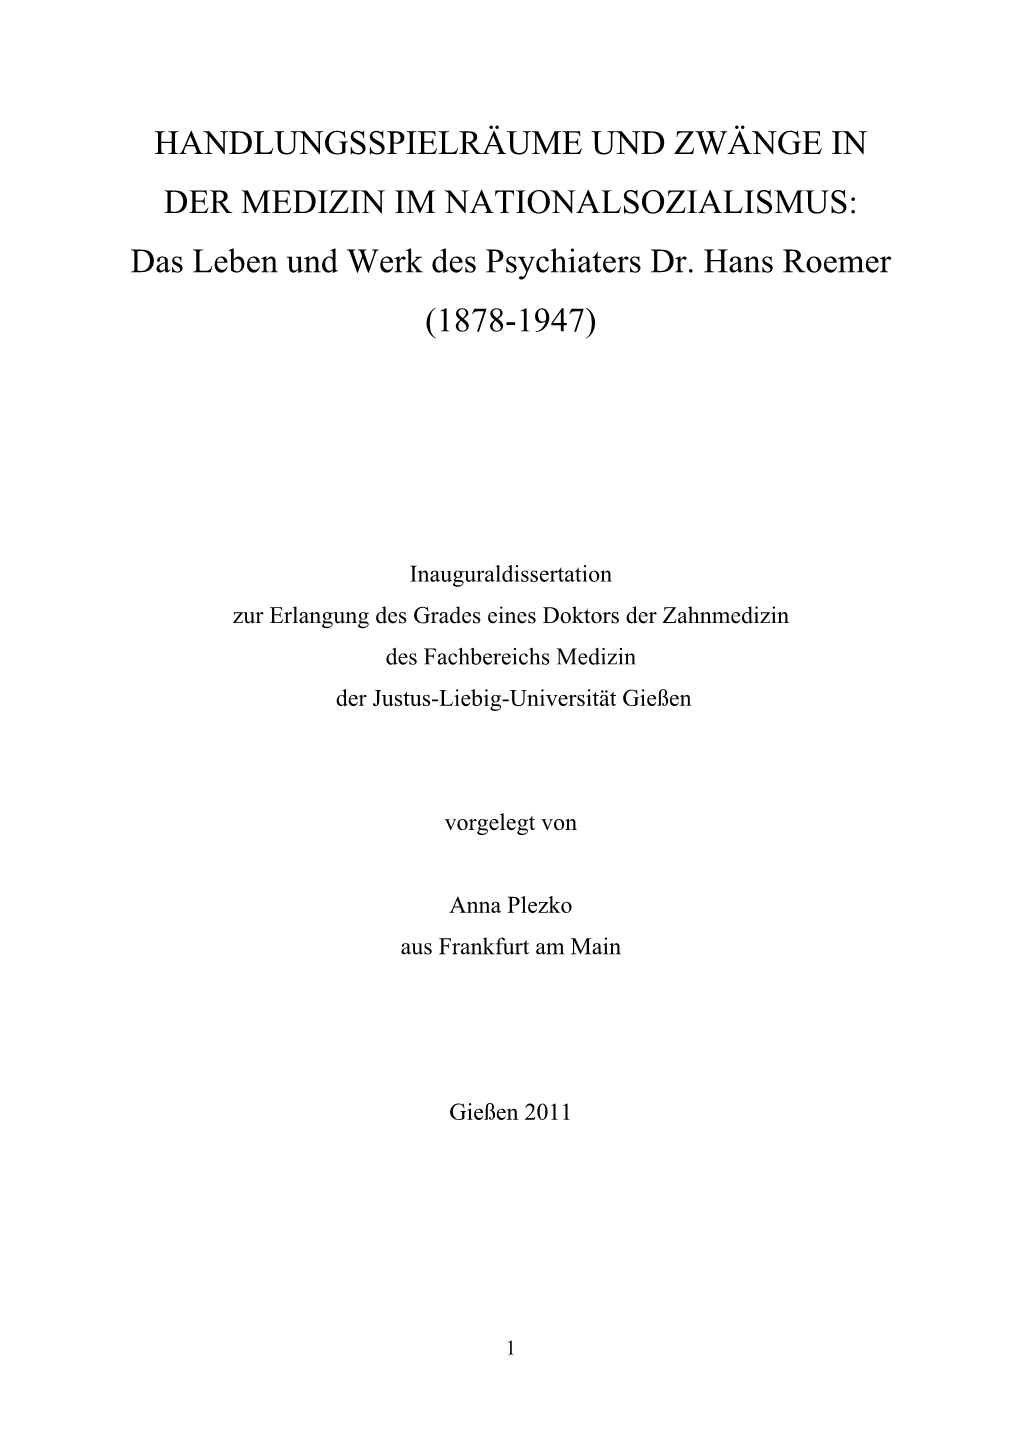 Das Leben Und Werk Des Psychiaters Dr. Hans Roemer (1878-1947)